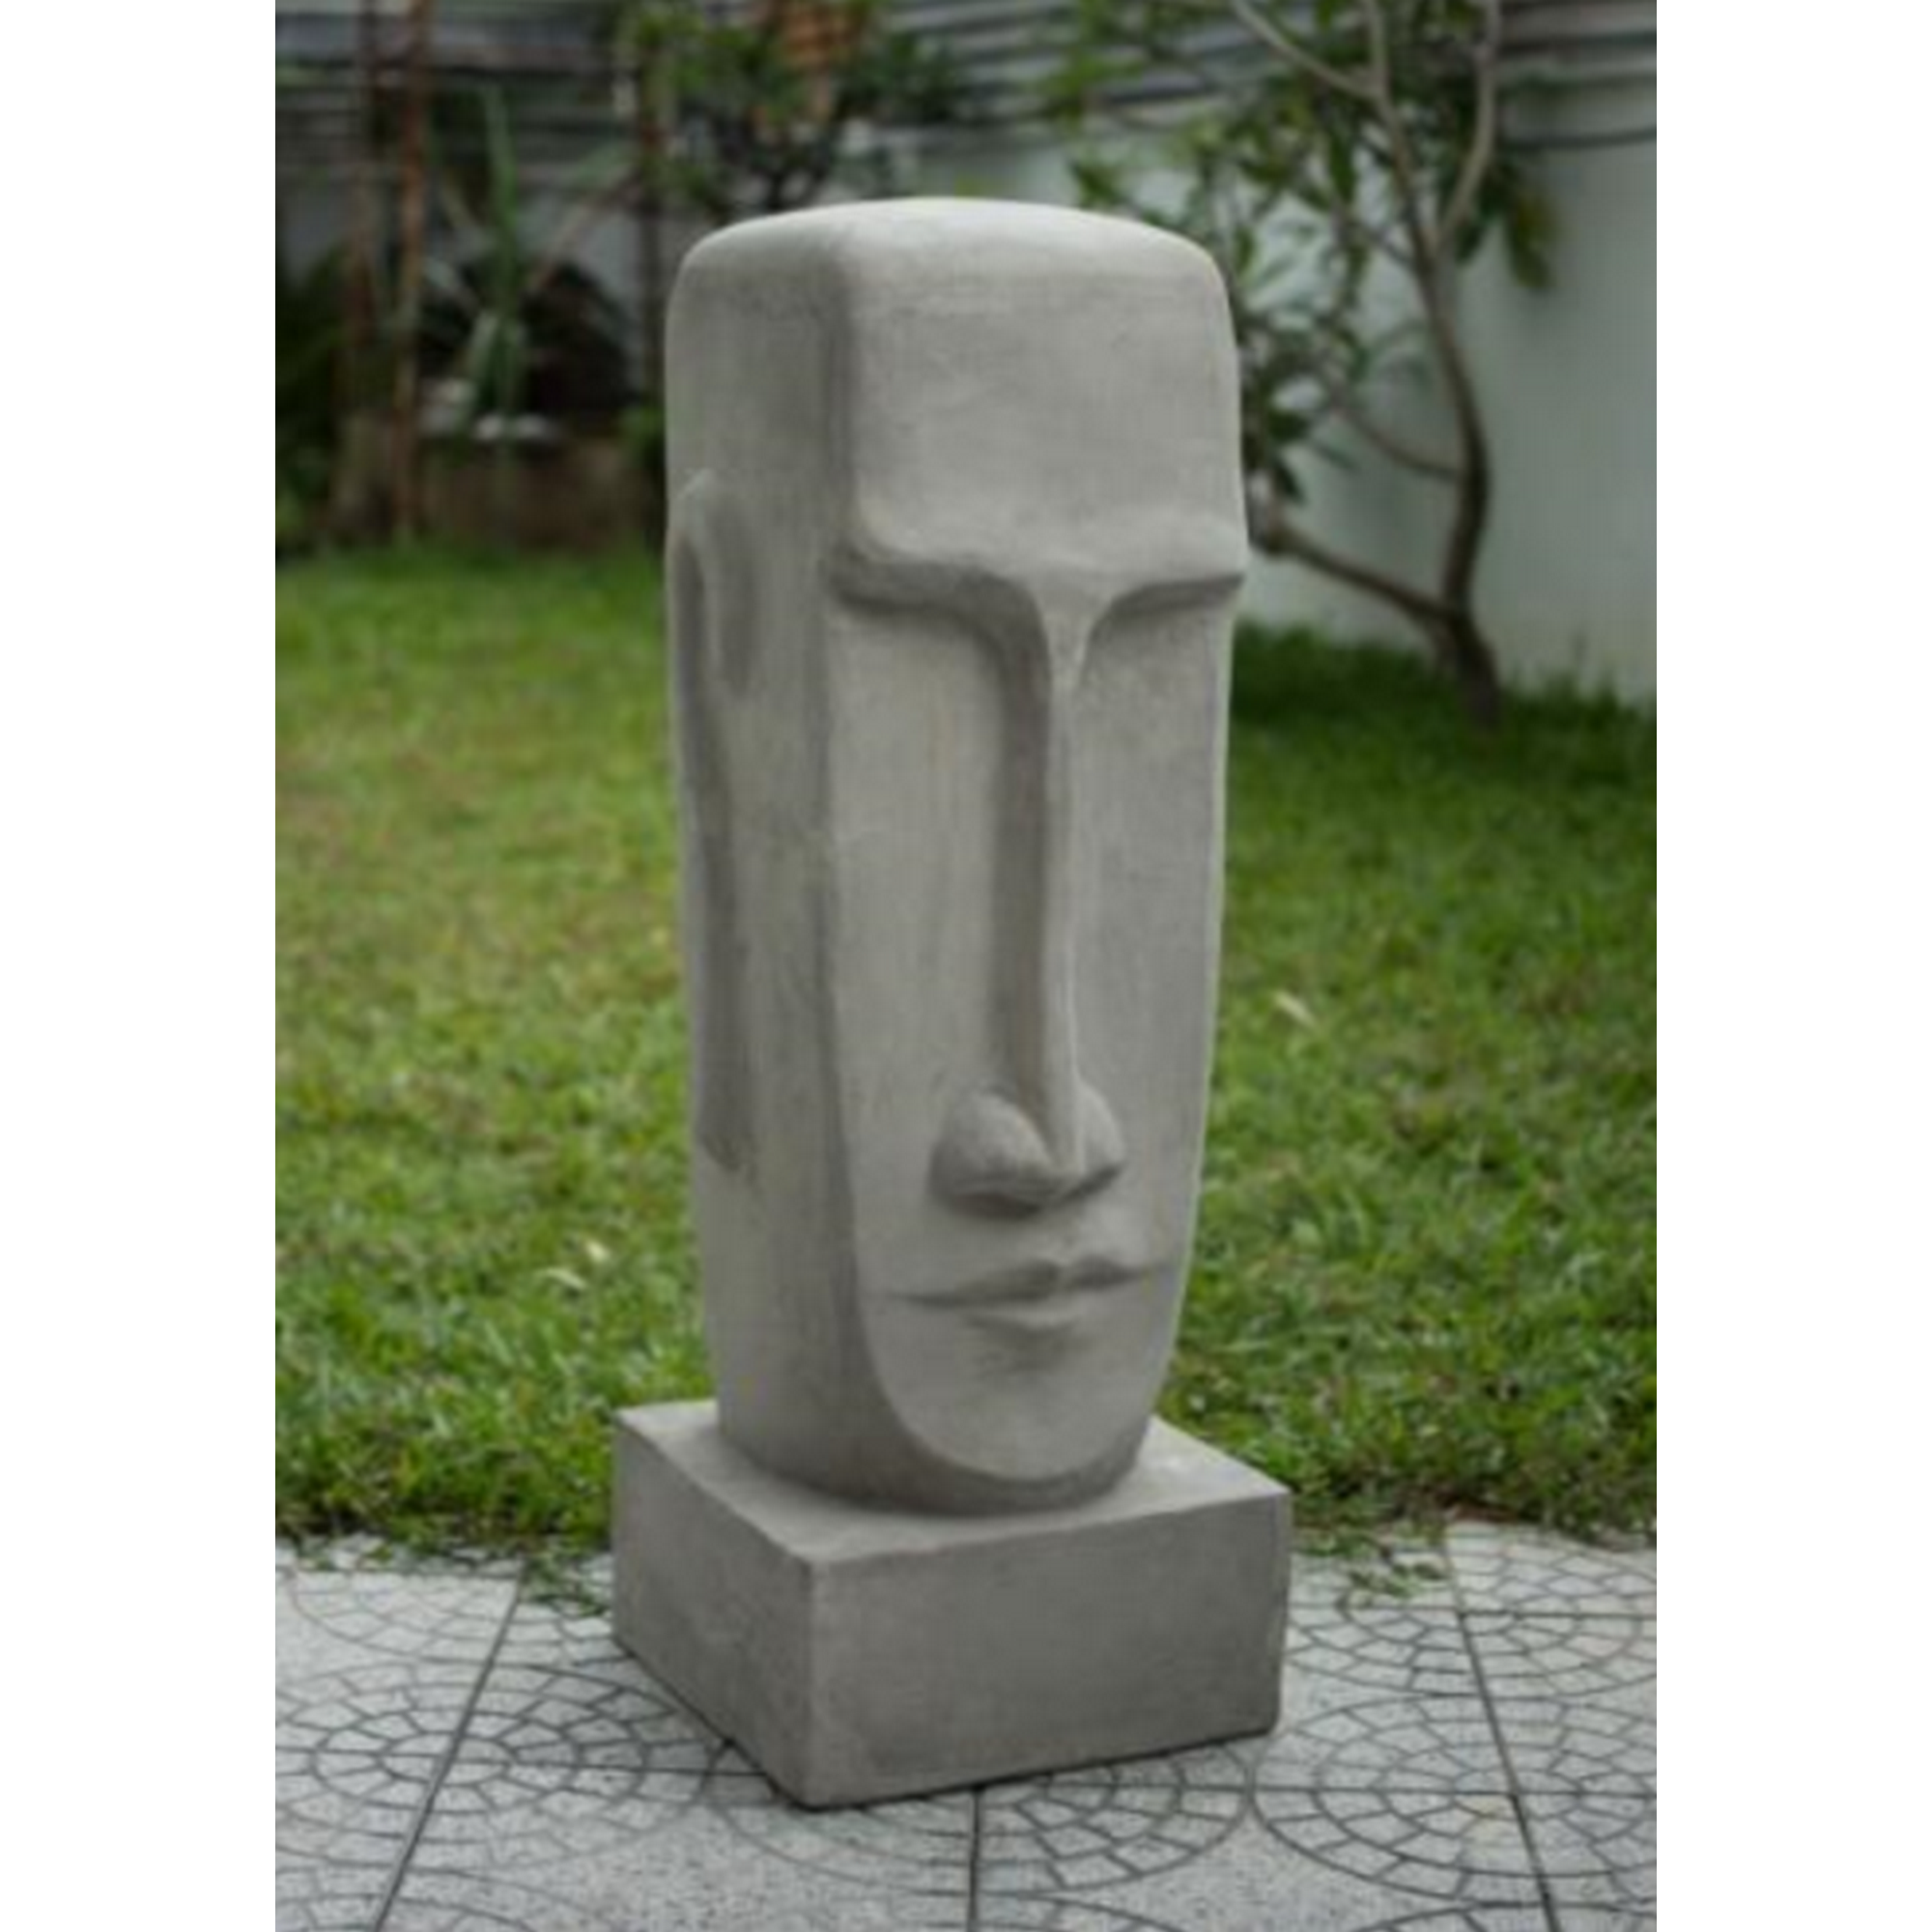 Gartenfigur Zement grau 100 x 30 x 30 cm + product picture